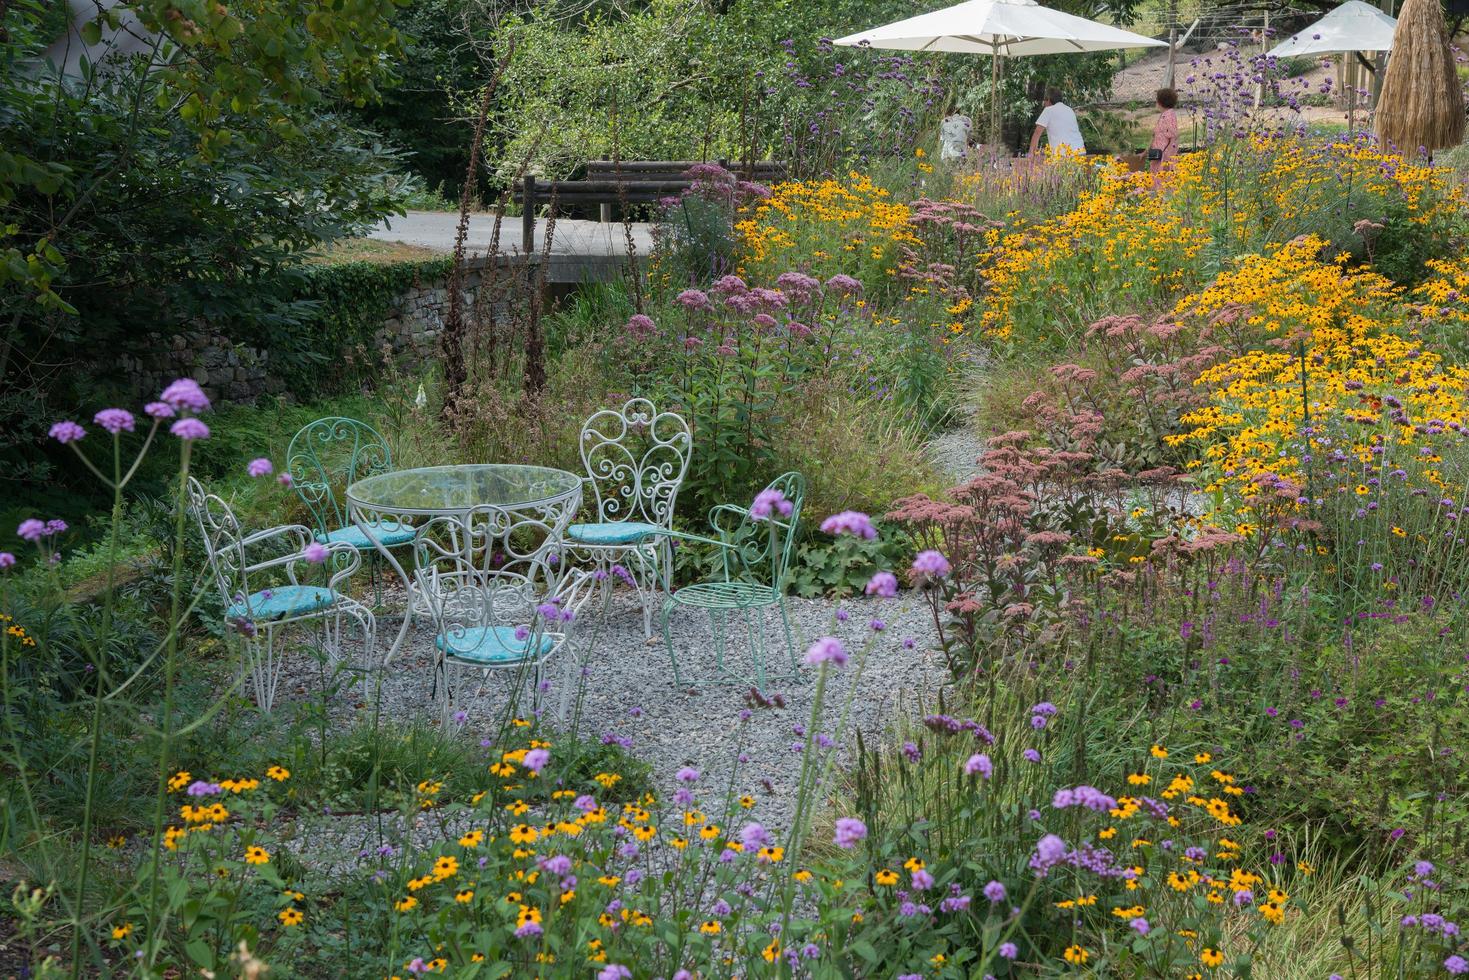 hermoso jardín con coloridas flores silvestres. gente desconocida en la distancia. muebles de jardín de metal. foto